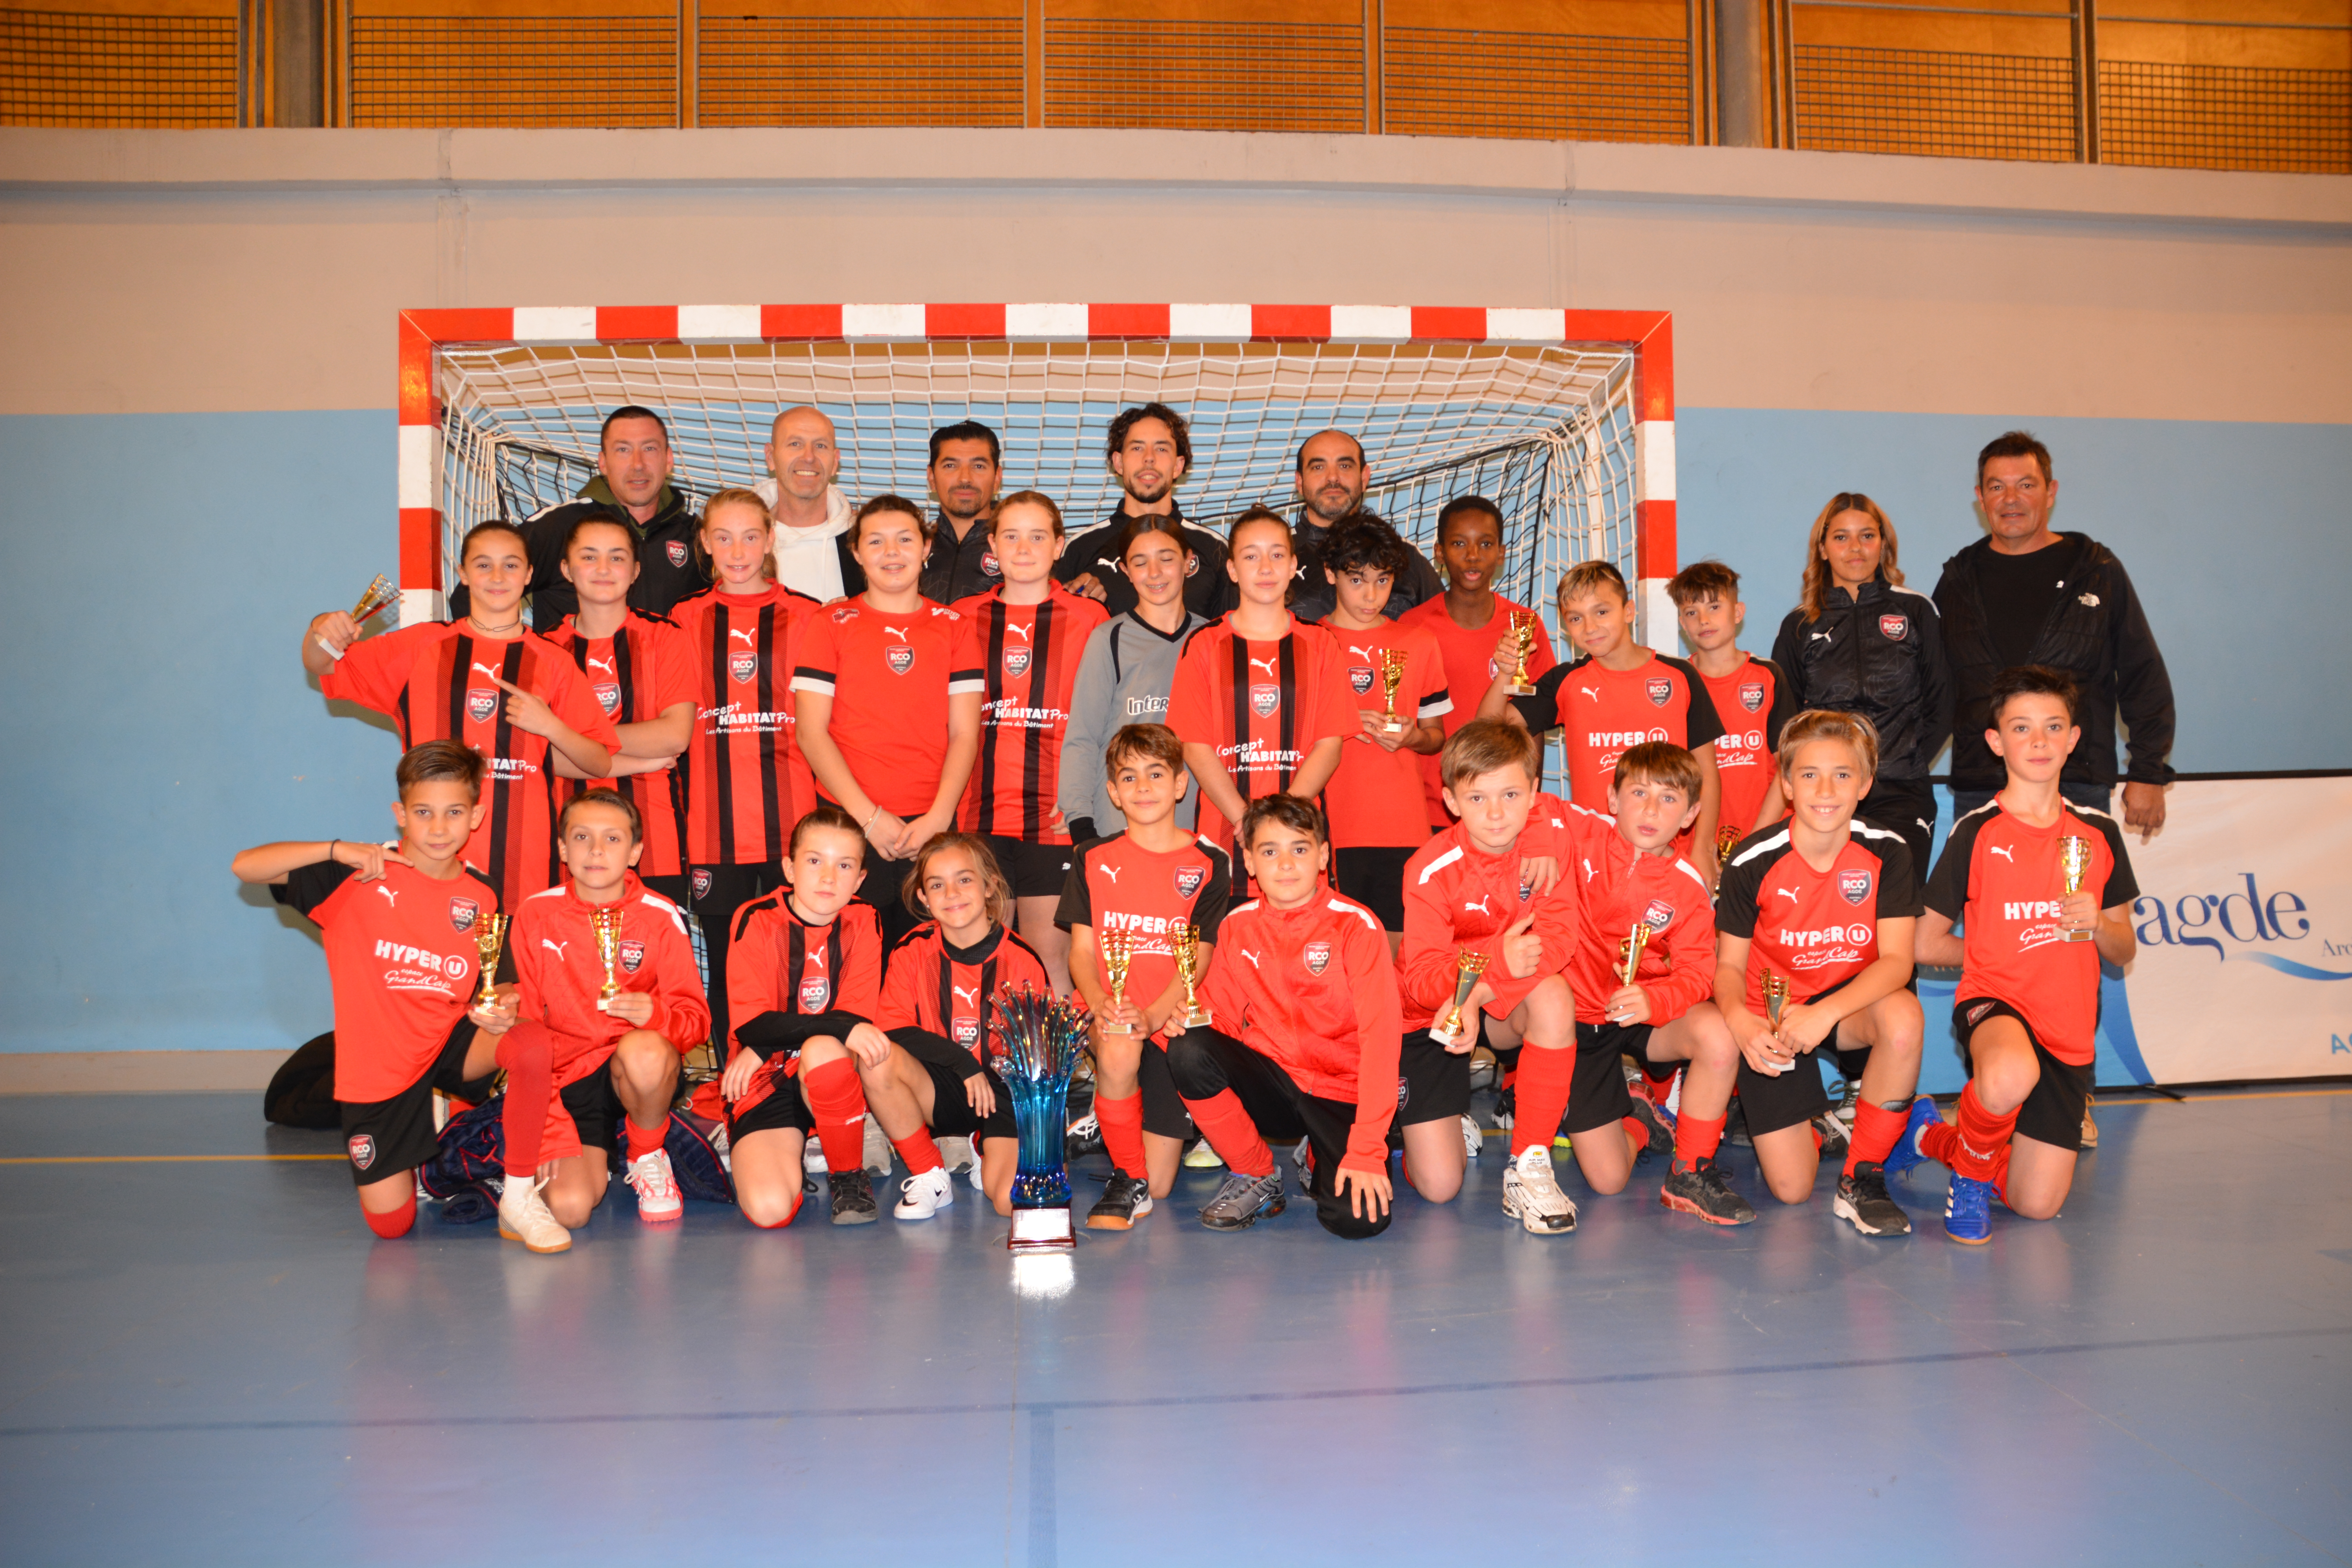 Football Agde - Le RCO Agde remporte le tournoi futsal Édouard Moreno !